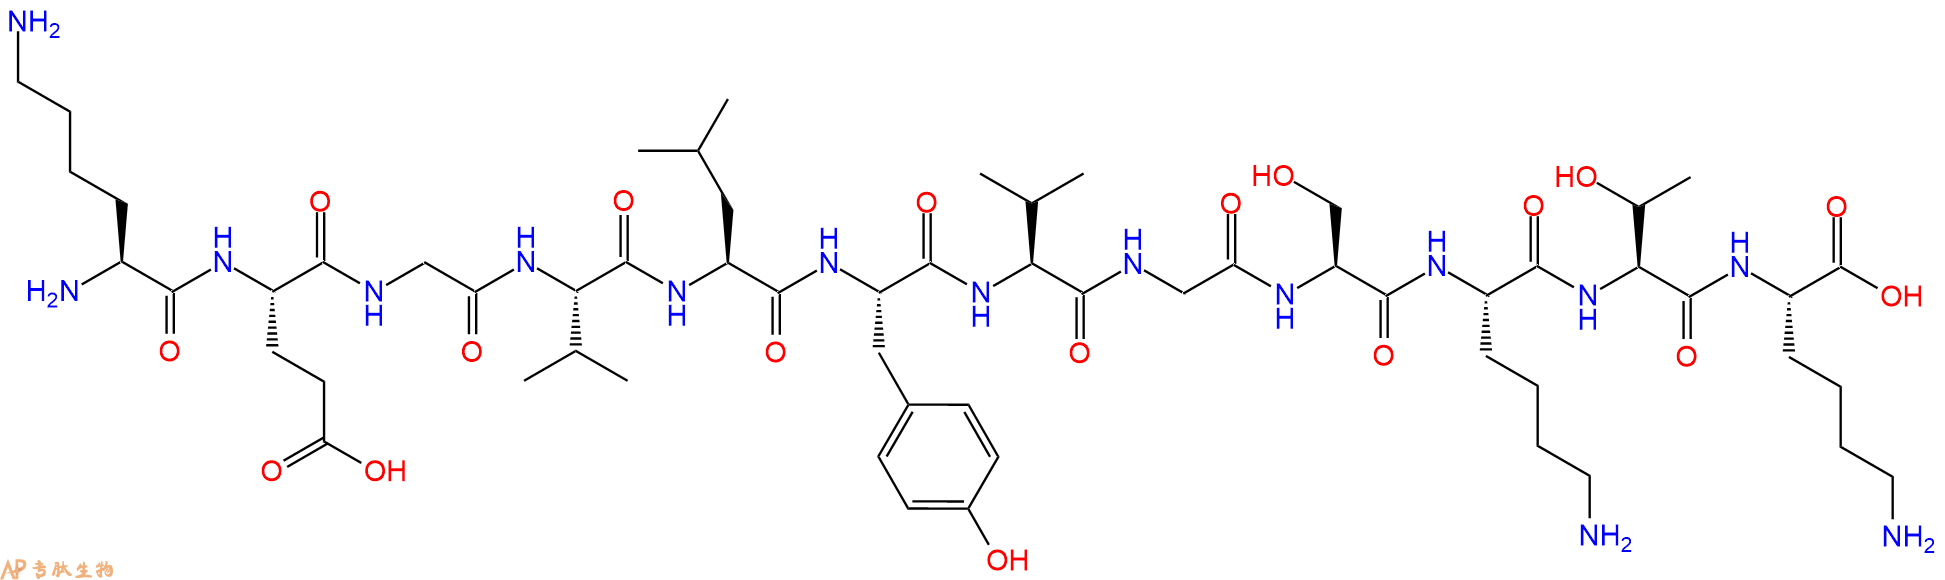 专肽生物产品α-突触核蛋白片段：α-Synuclein (34-45) (human)2170181-52-7